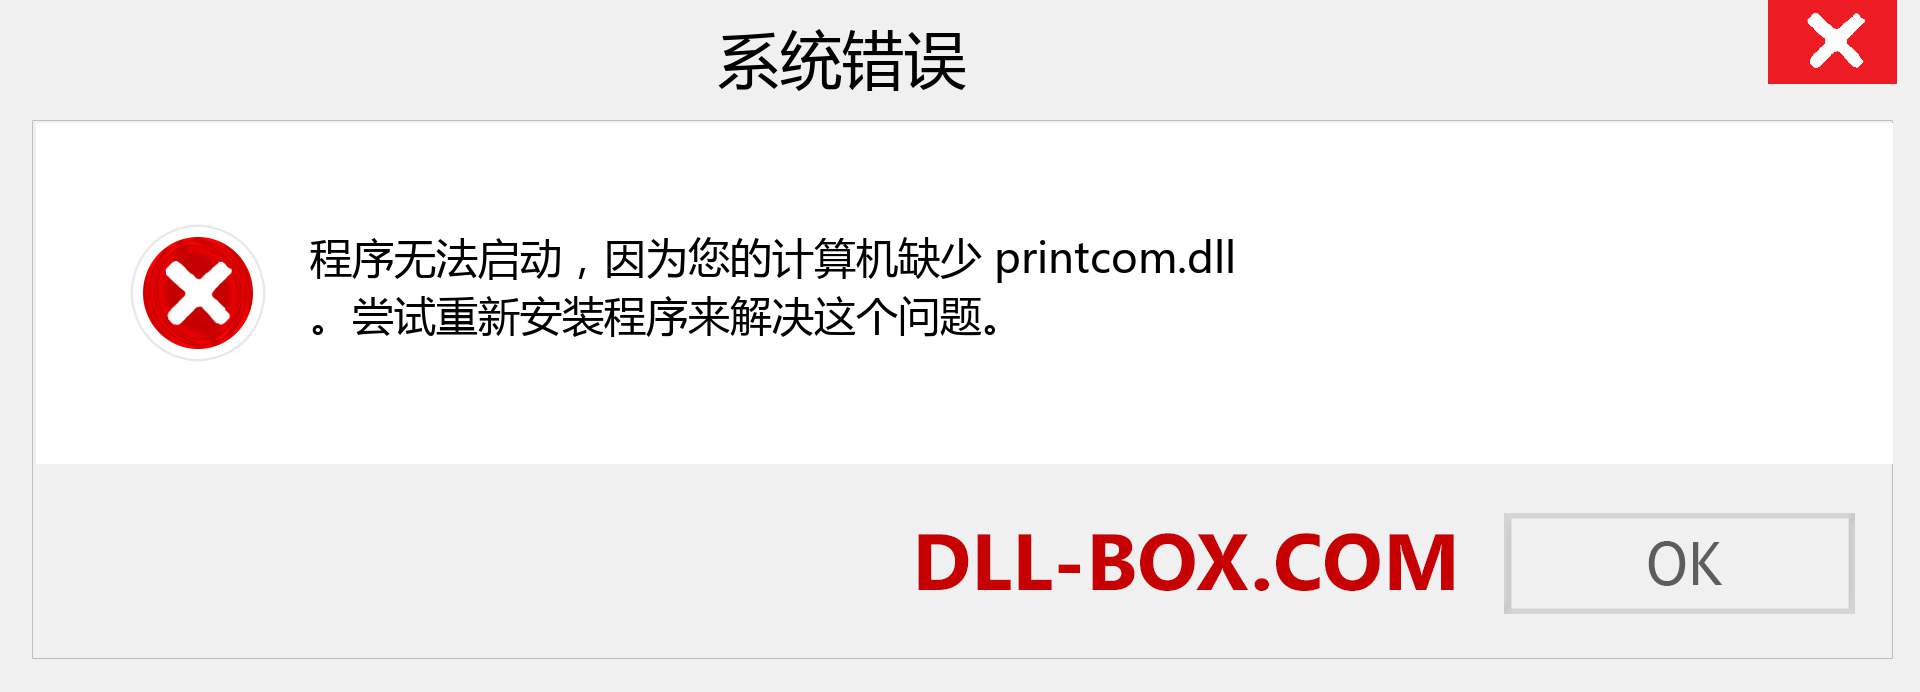 printcom.dll 文件丢失？。 适用于 Windows 7、8、10 的下载 - 修复 Windows、照片、图像上的 printcom dll 丢失错误